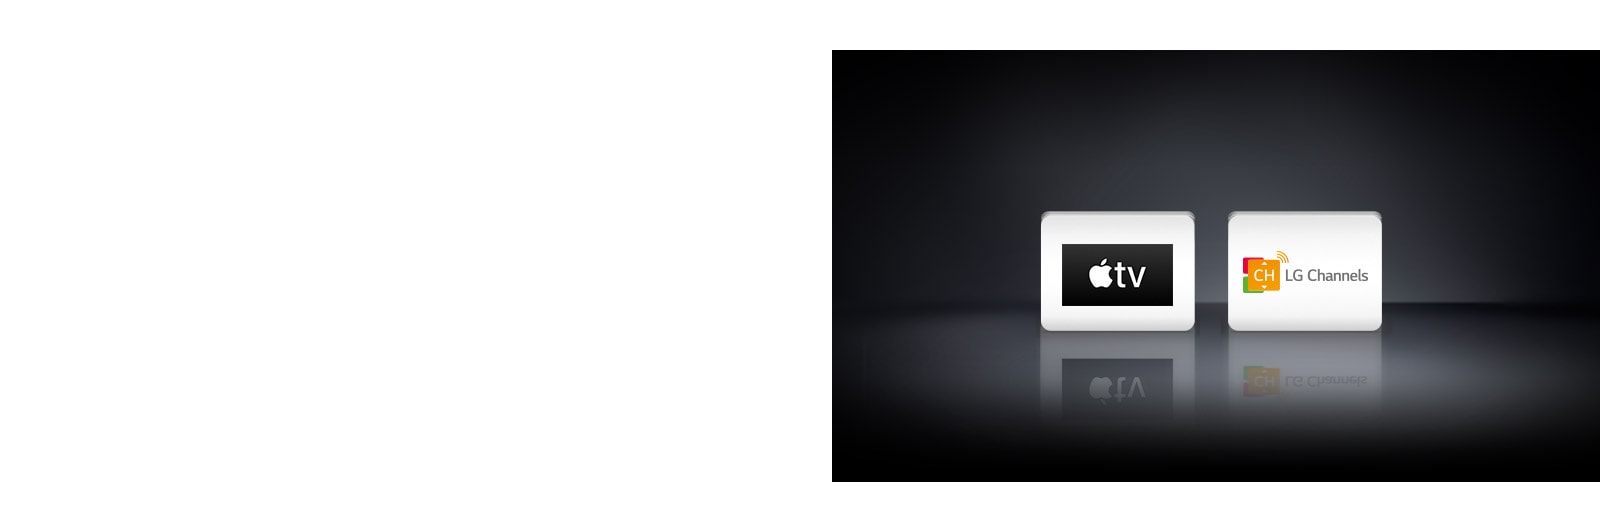 Два логотипа: Apple TV и LG Channels